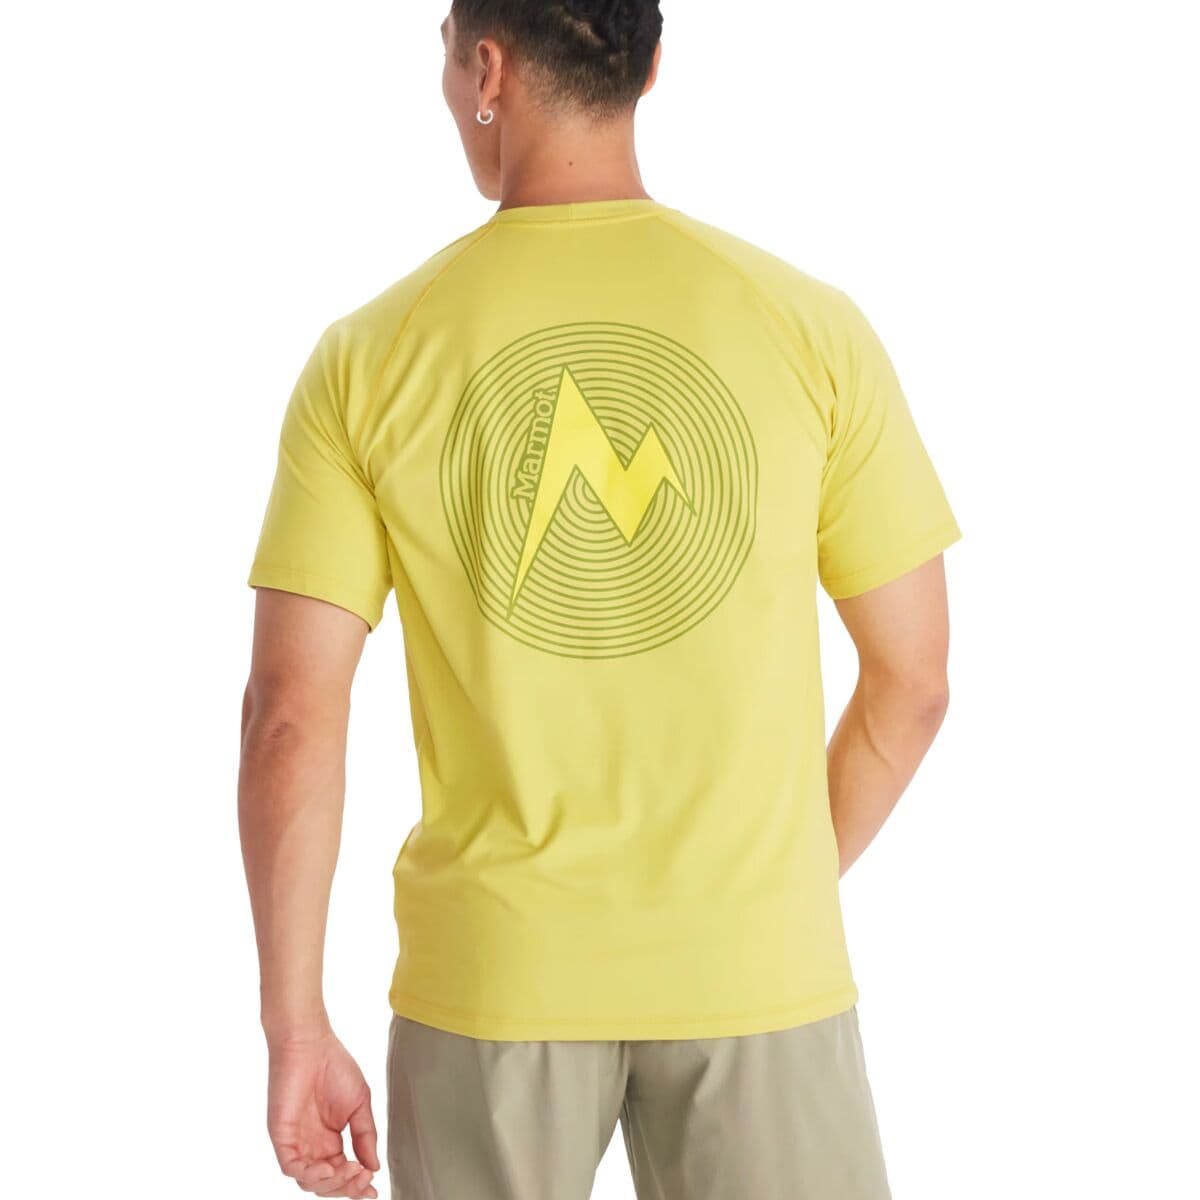 Windridge Graphic Shirt - Men